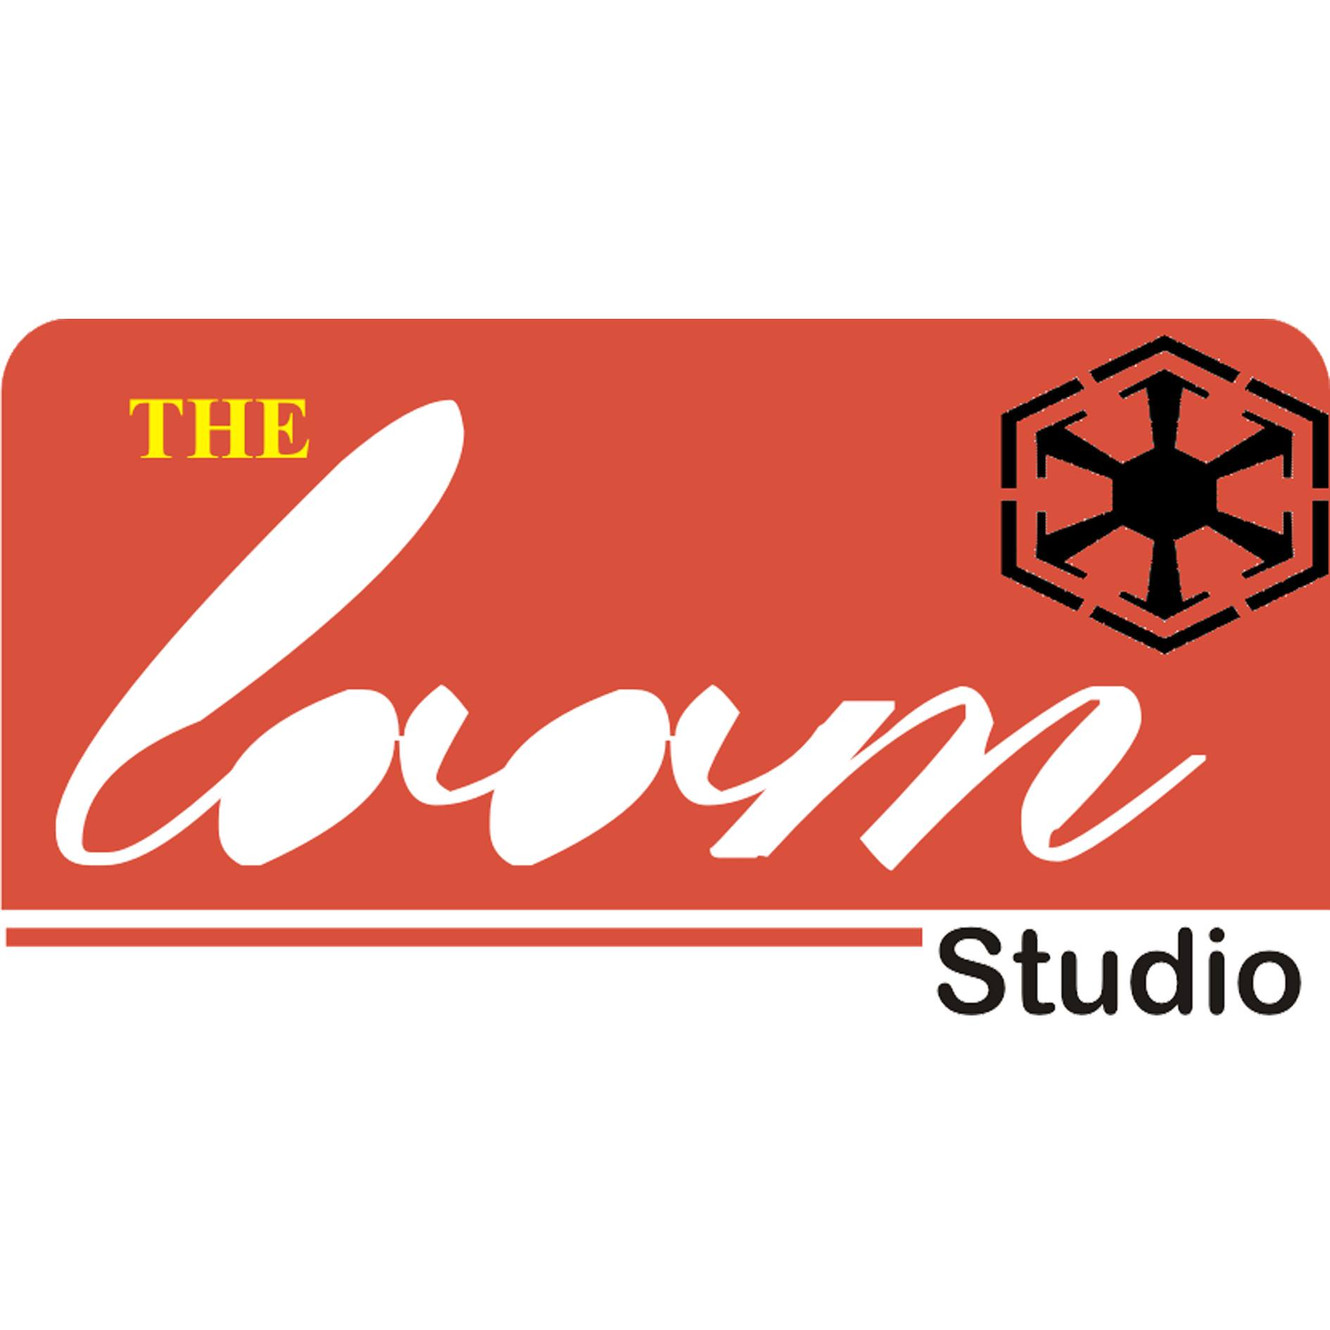 Buy Latest Designer Sarees Online in India | The Loom Studio